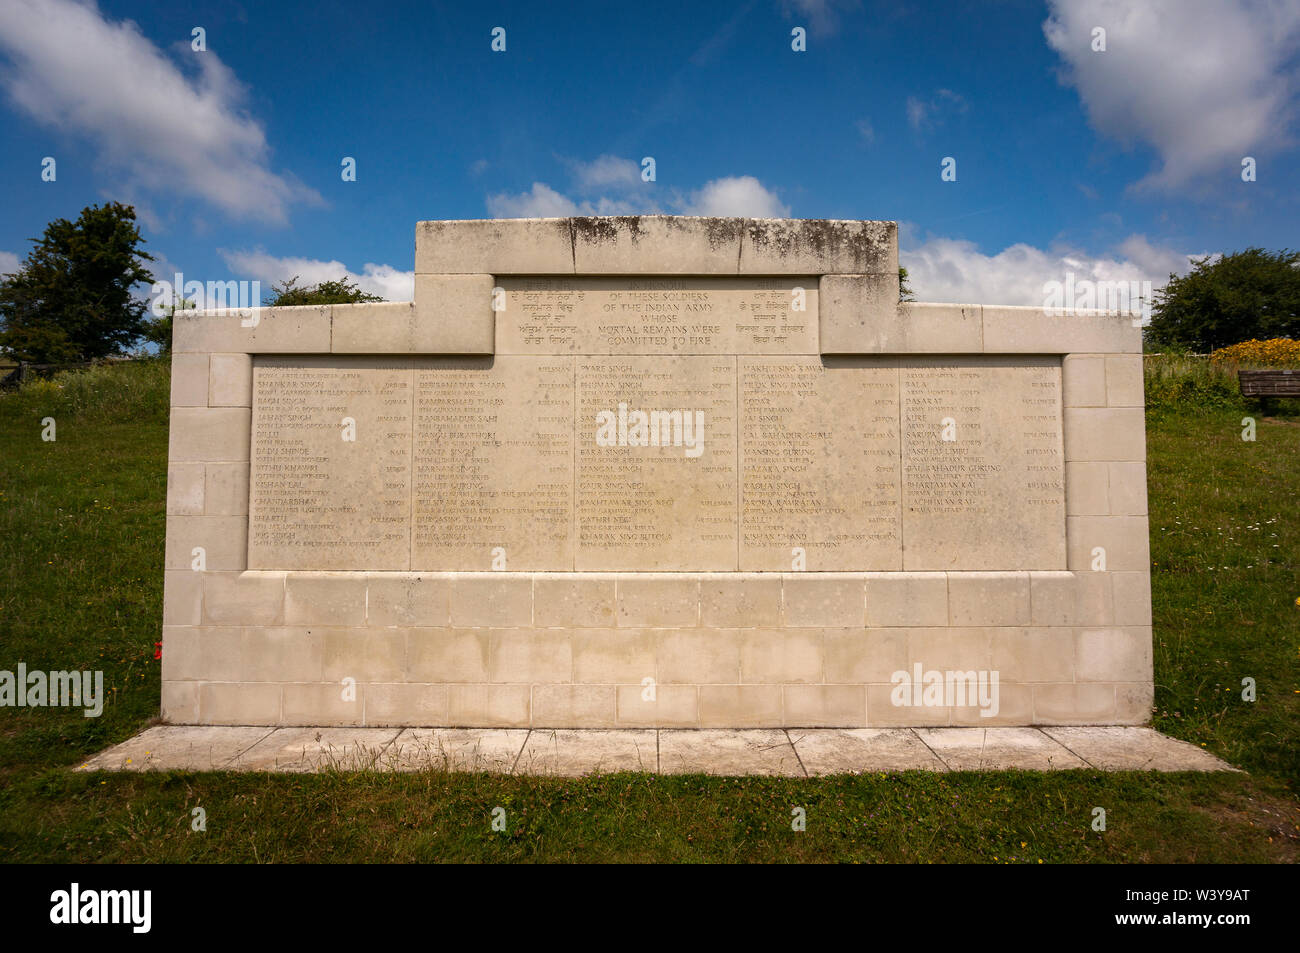 La guerre Chattri memorial sur les South Downs au-dessus de Brighton à l'armée des soldats qui sont morts pendant la Première Guerre mondiale. Banque D'Images